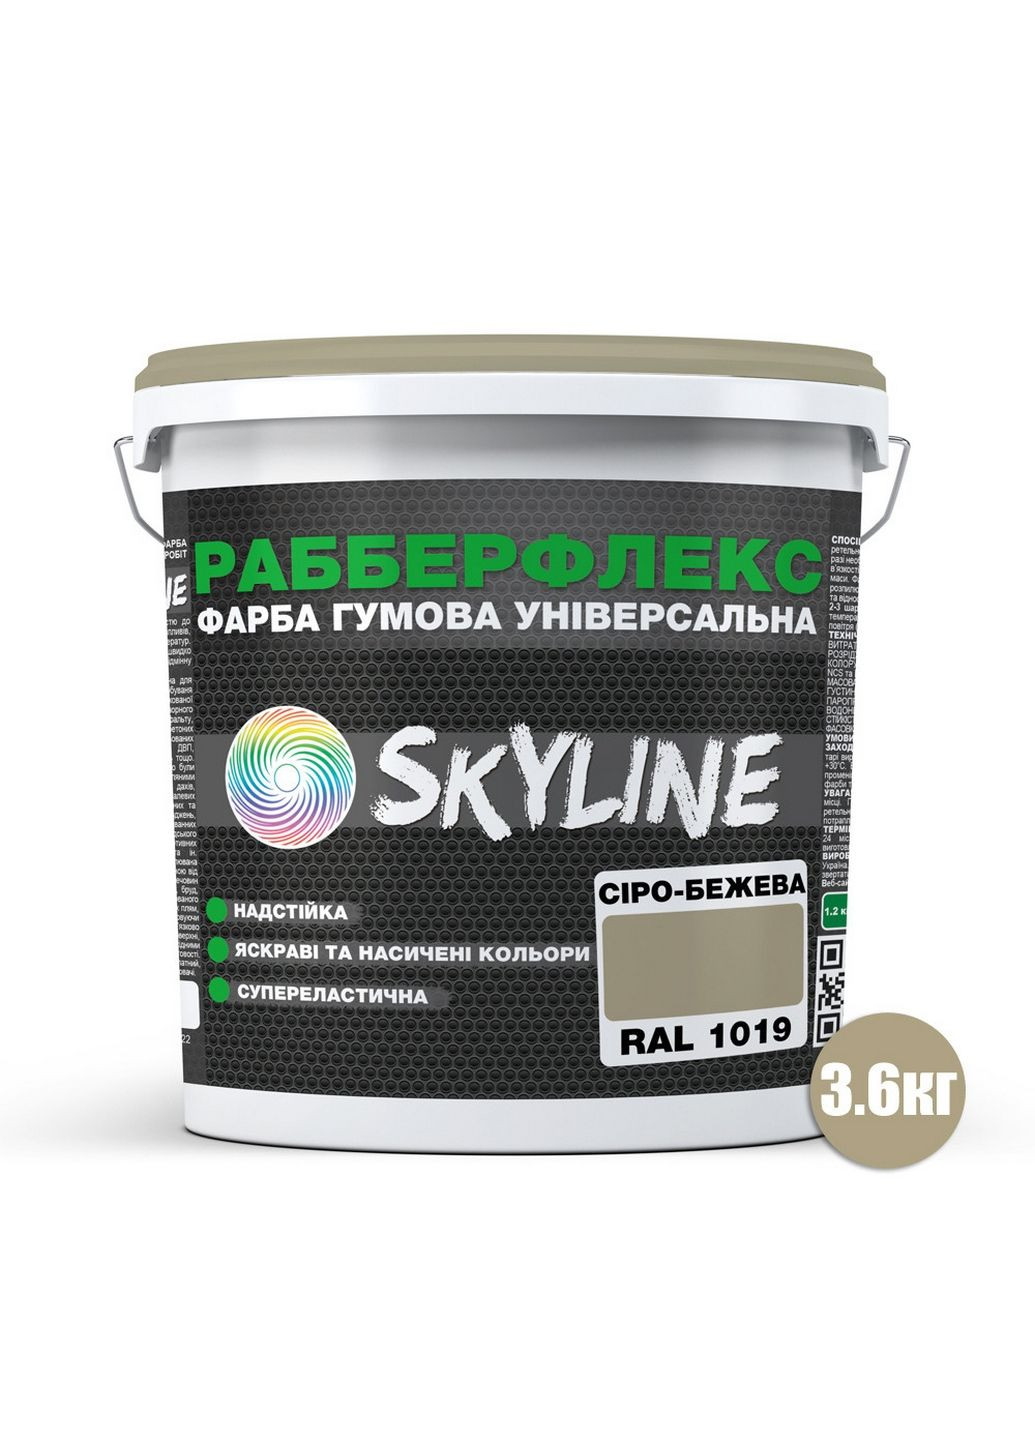 Надстійка фарба гумова супереластична «РабберФлекс» 3,6 кг SkyLine (289460282)